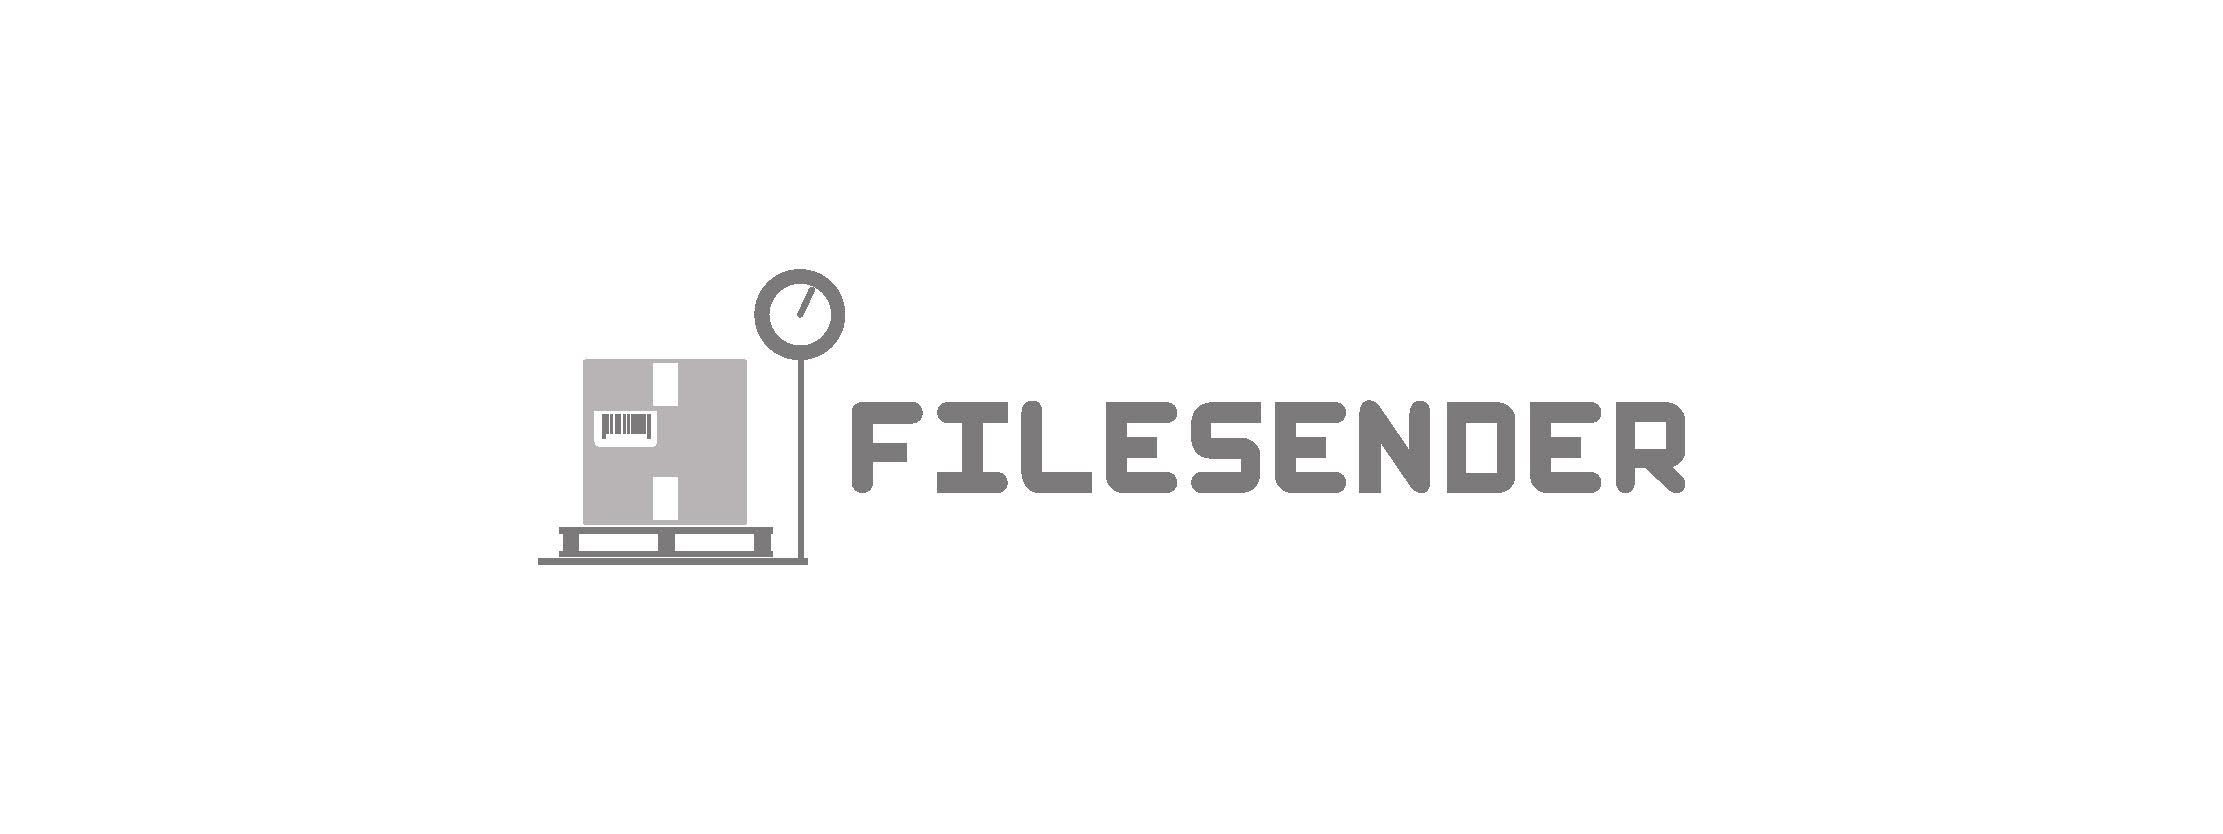 FILESENDER Logo